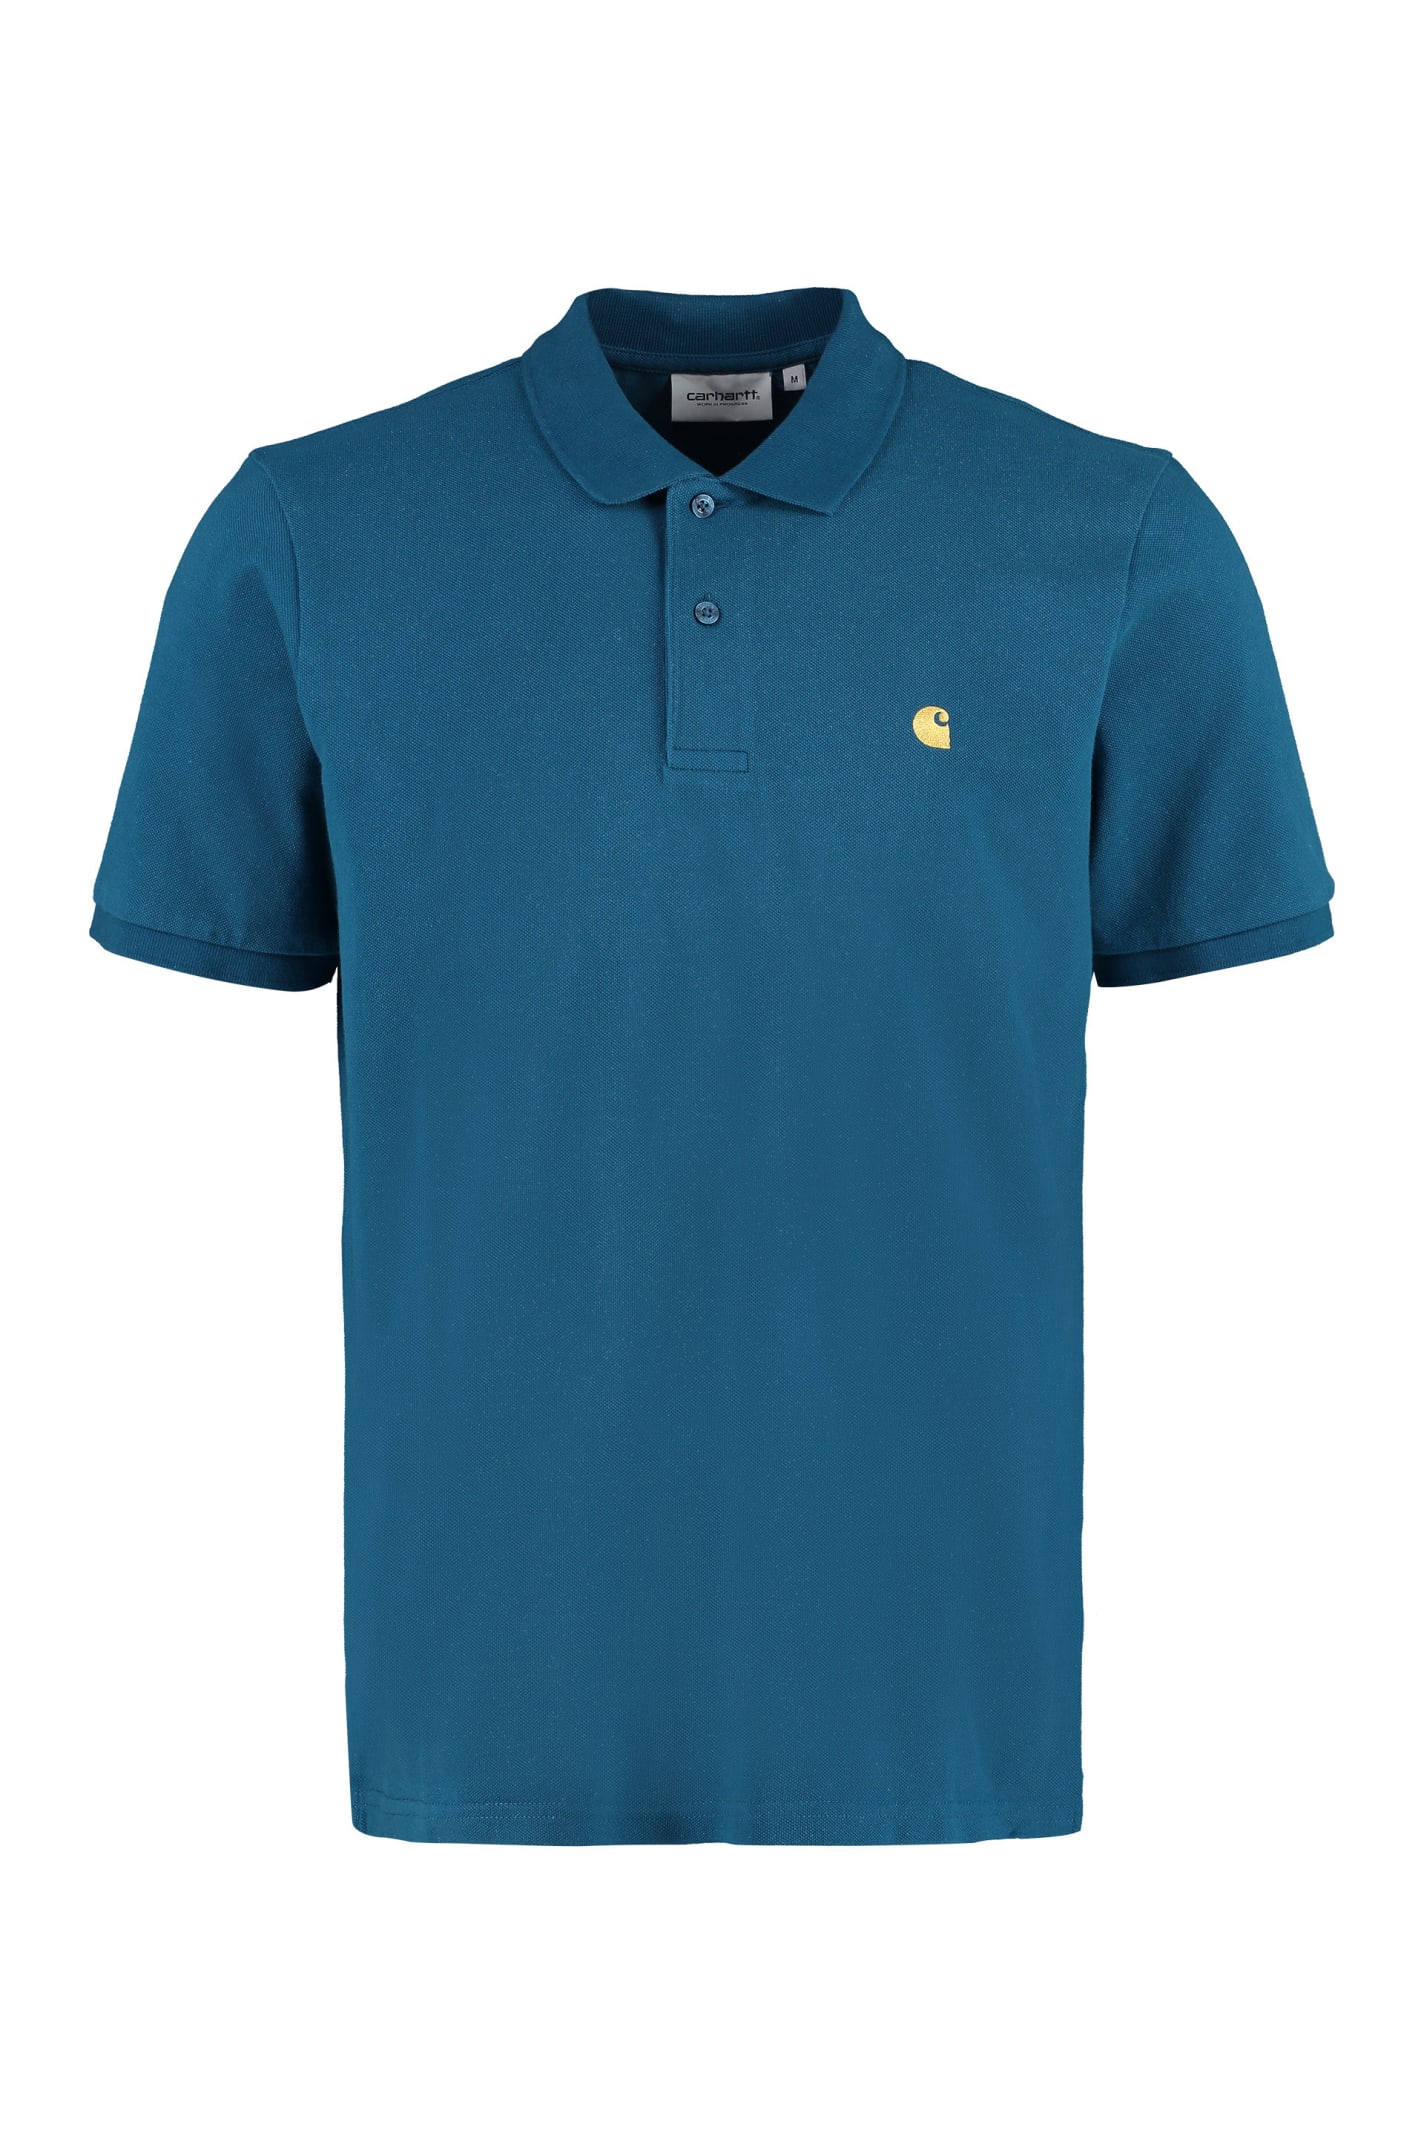 Carhartt Cotton-piqué Polo Shirt